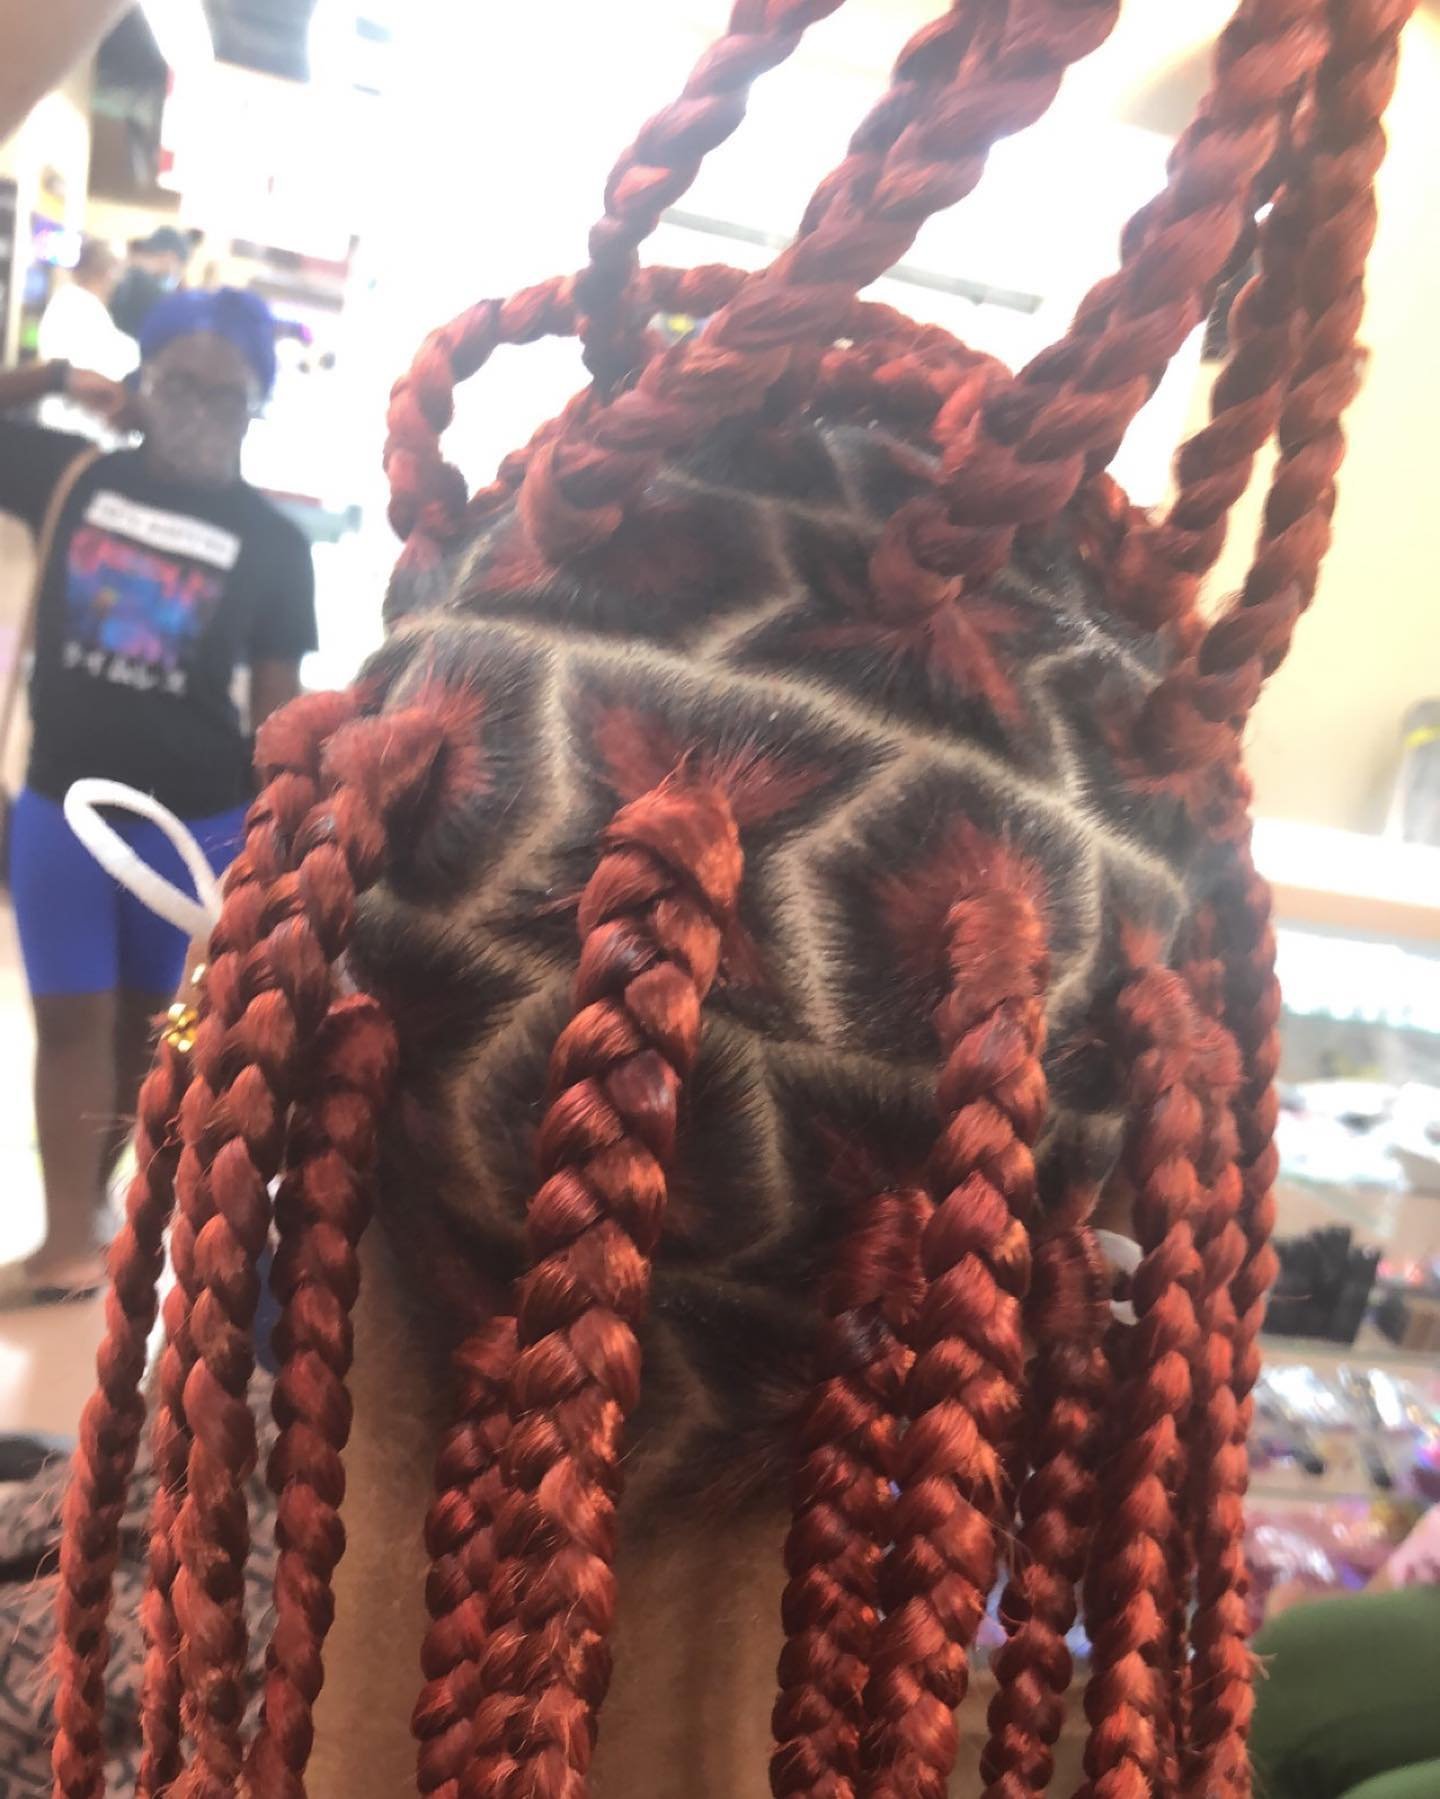 red jumbo box braids